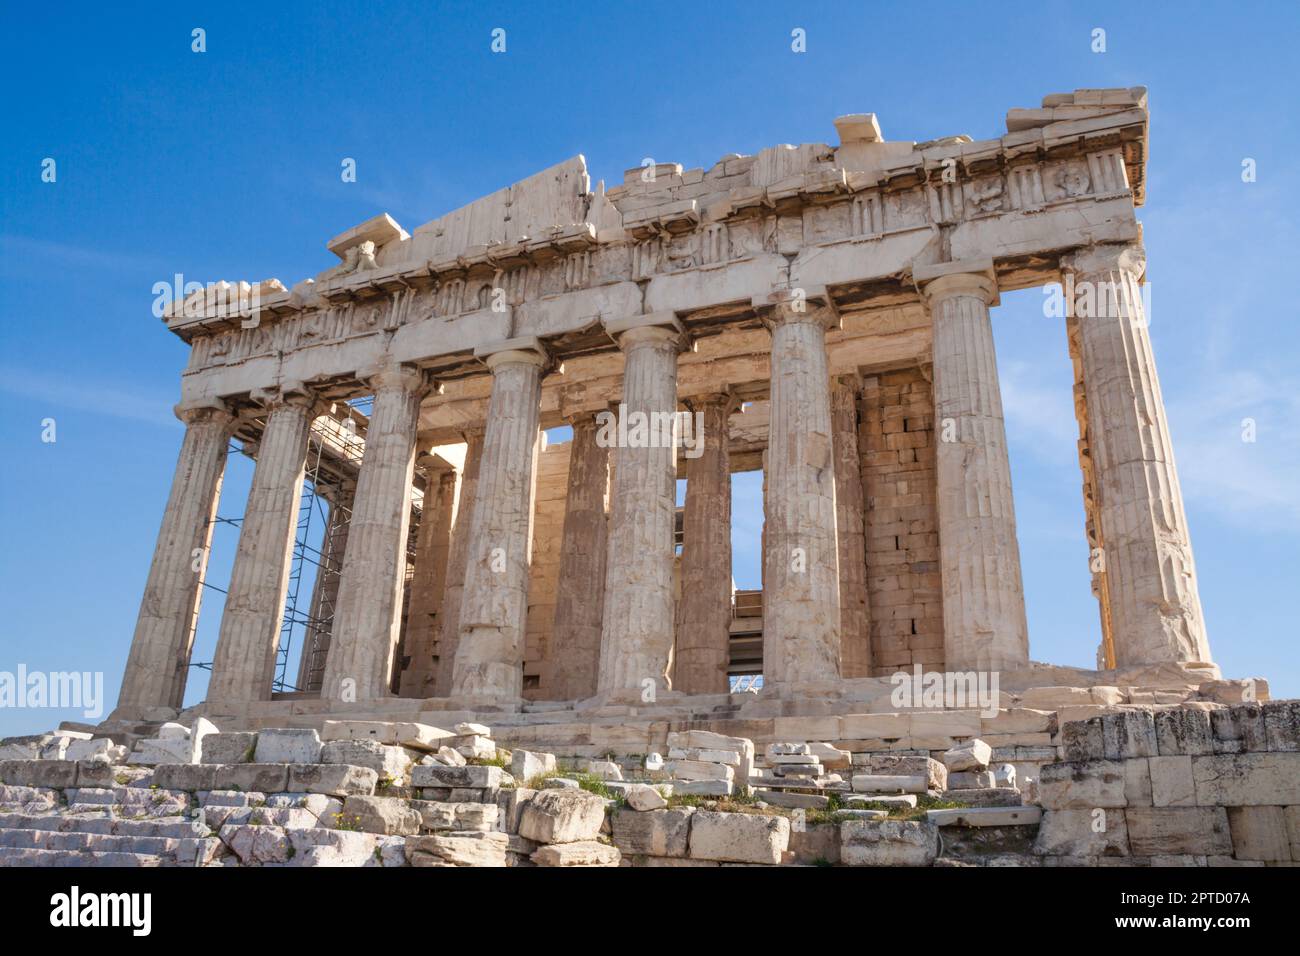 Parthenon on the Acropolis of Athens, Greece. The ancient Greek Parthenon is the main landmark of Athens. Stock Photo